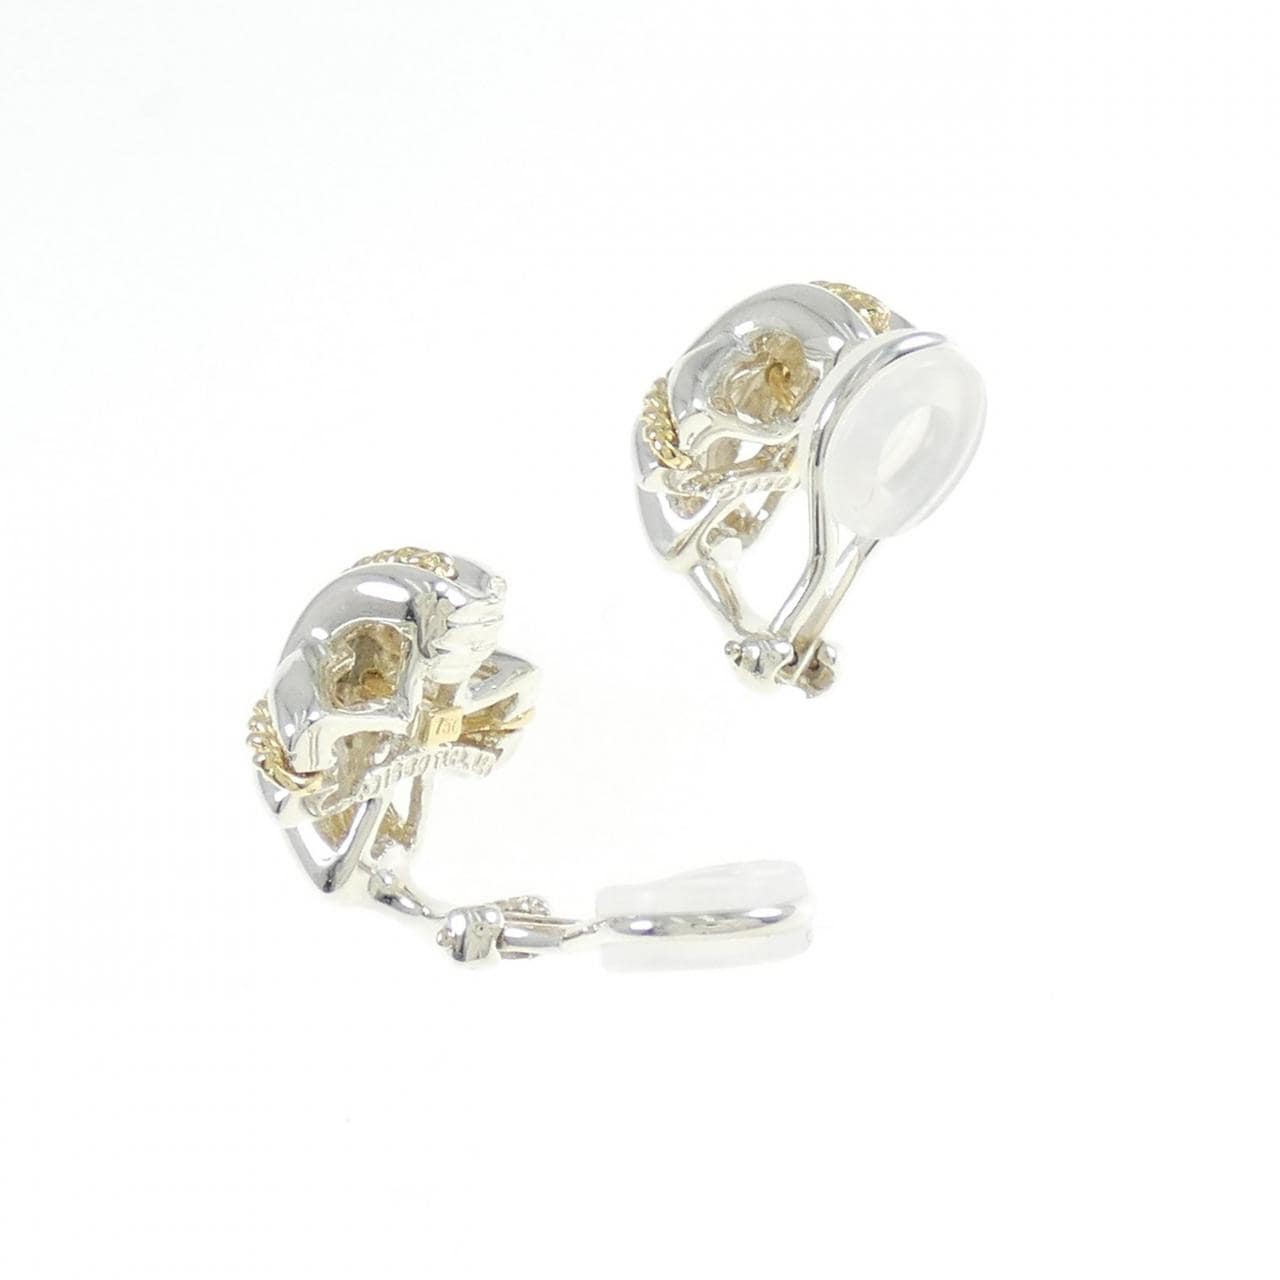 TIFFANY signature earrings